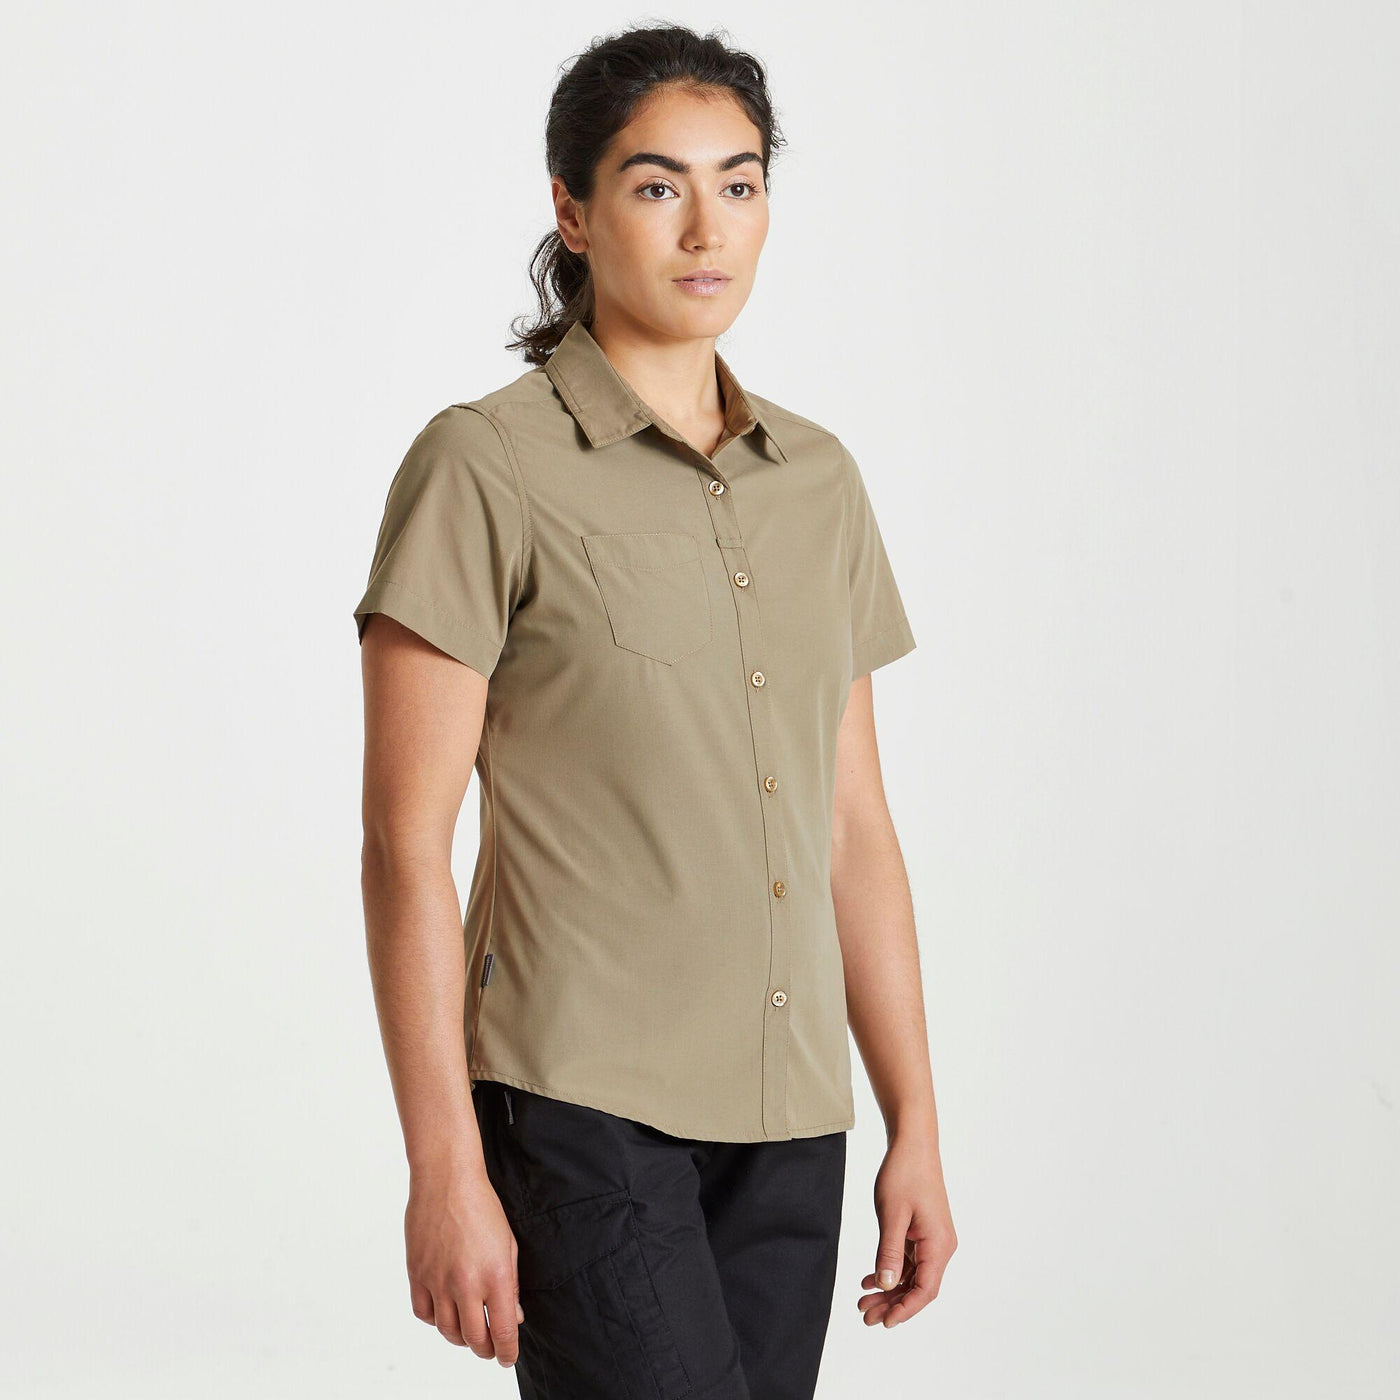 Craghoppers Expert Womens Kiwi Short Sleeved Shirt